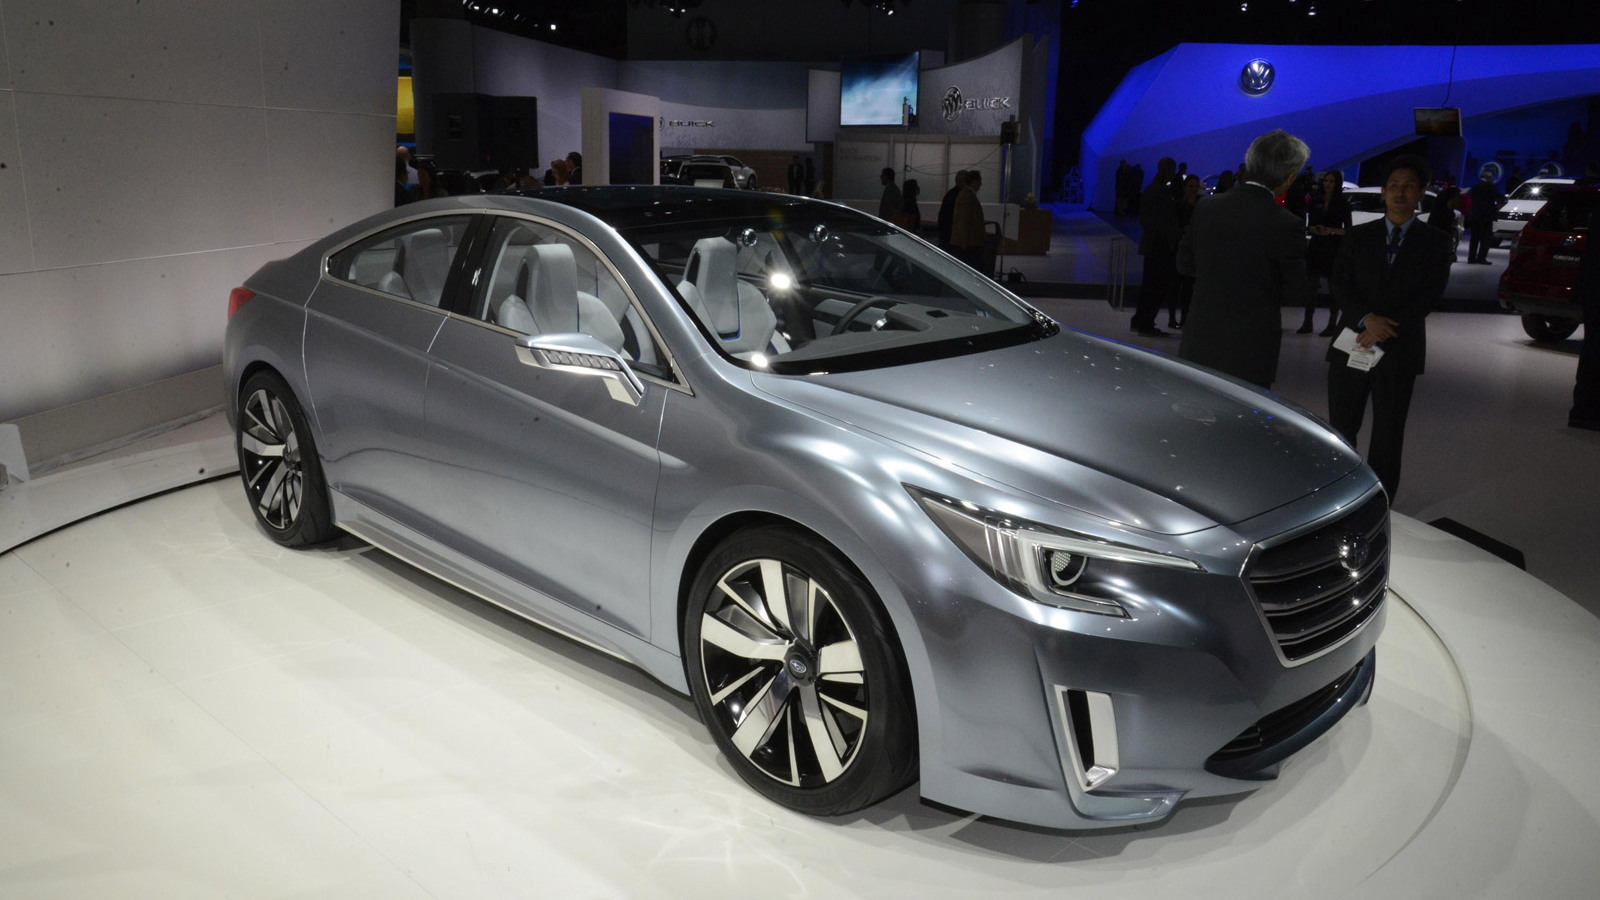 2015 Subaru Legacy concept, 2013 Los Angeles Auto Show